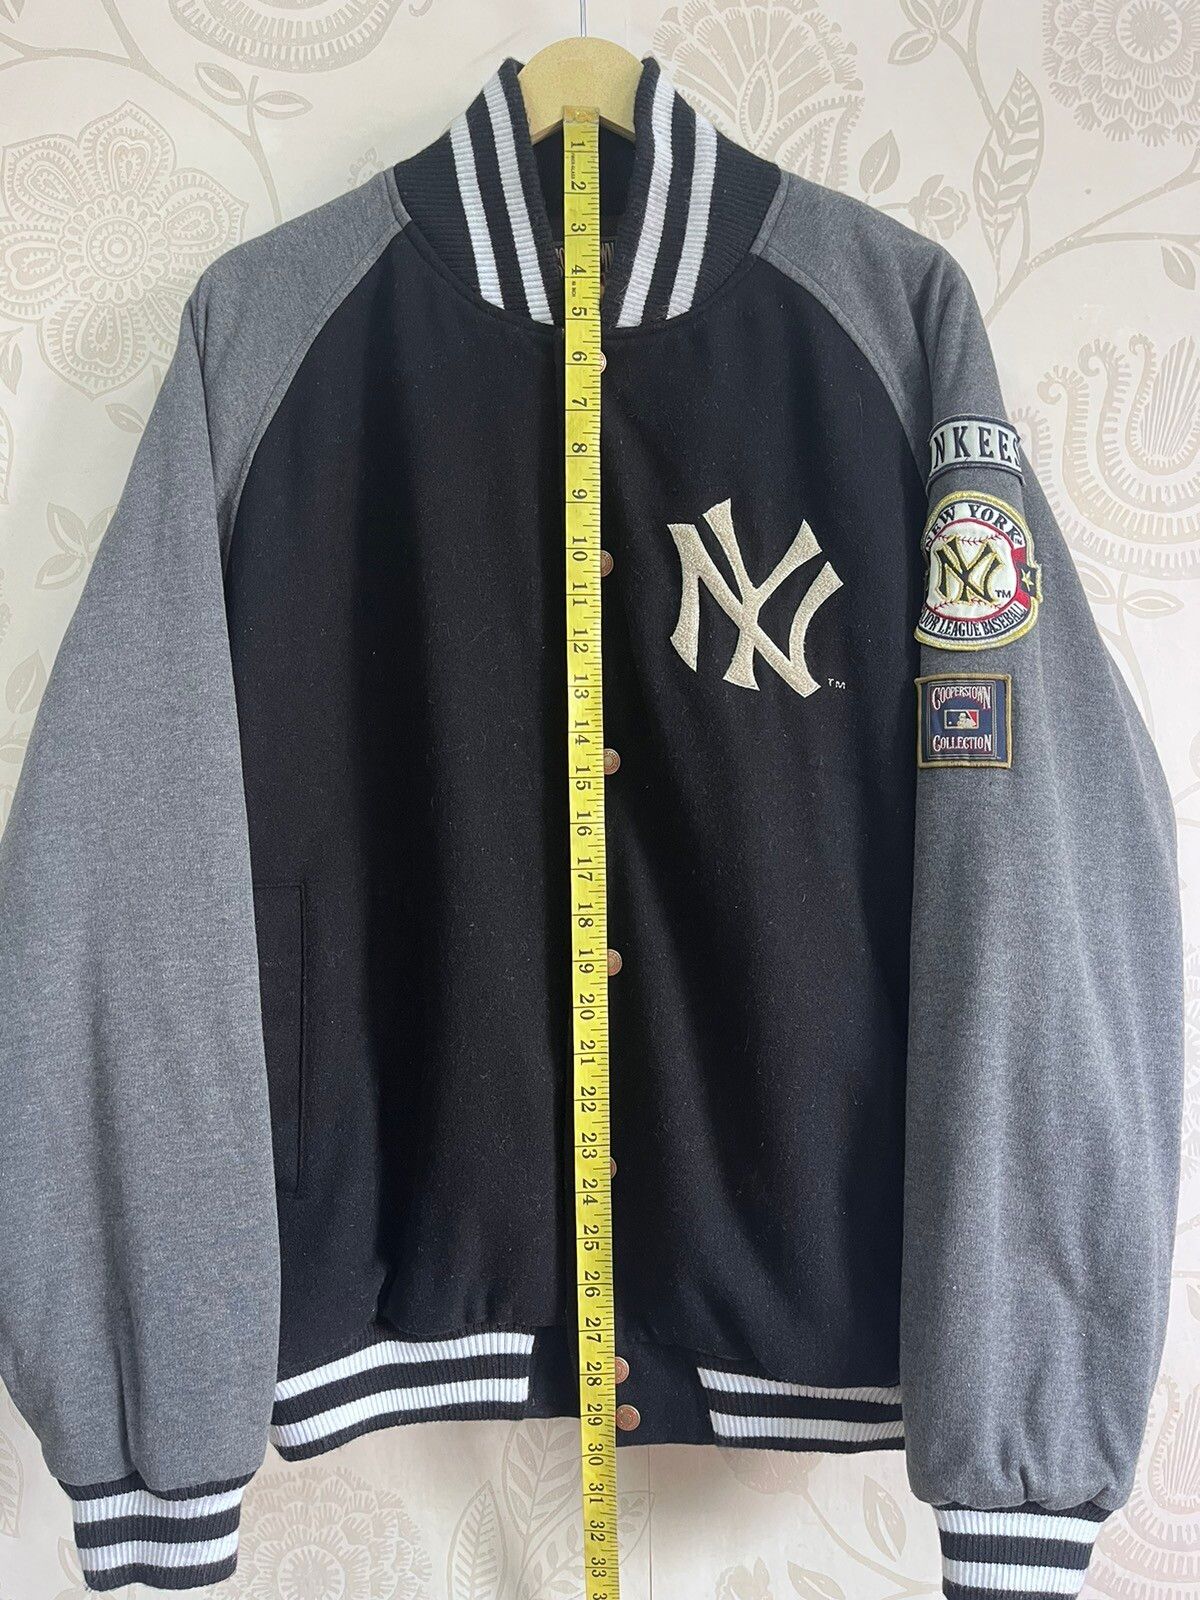 Vintage New York Yankees Coopertown Varsity Jacket - 2